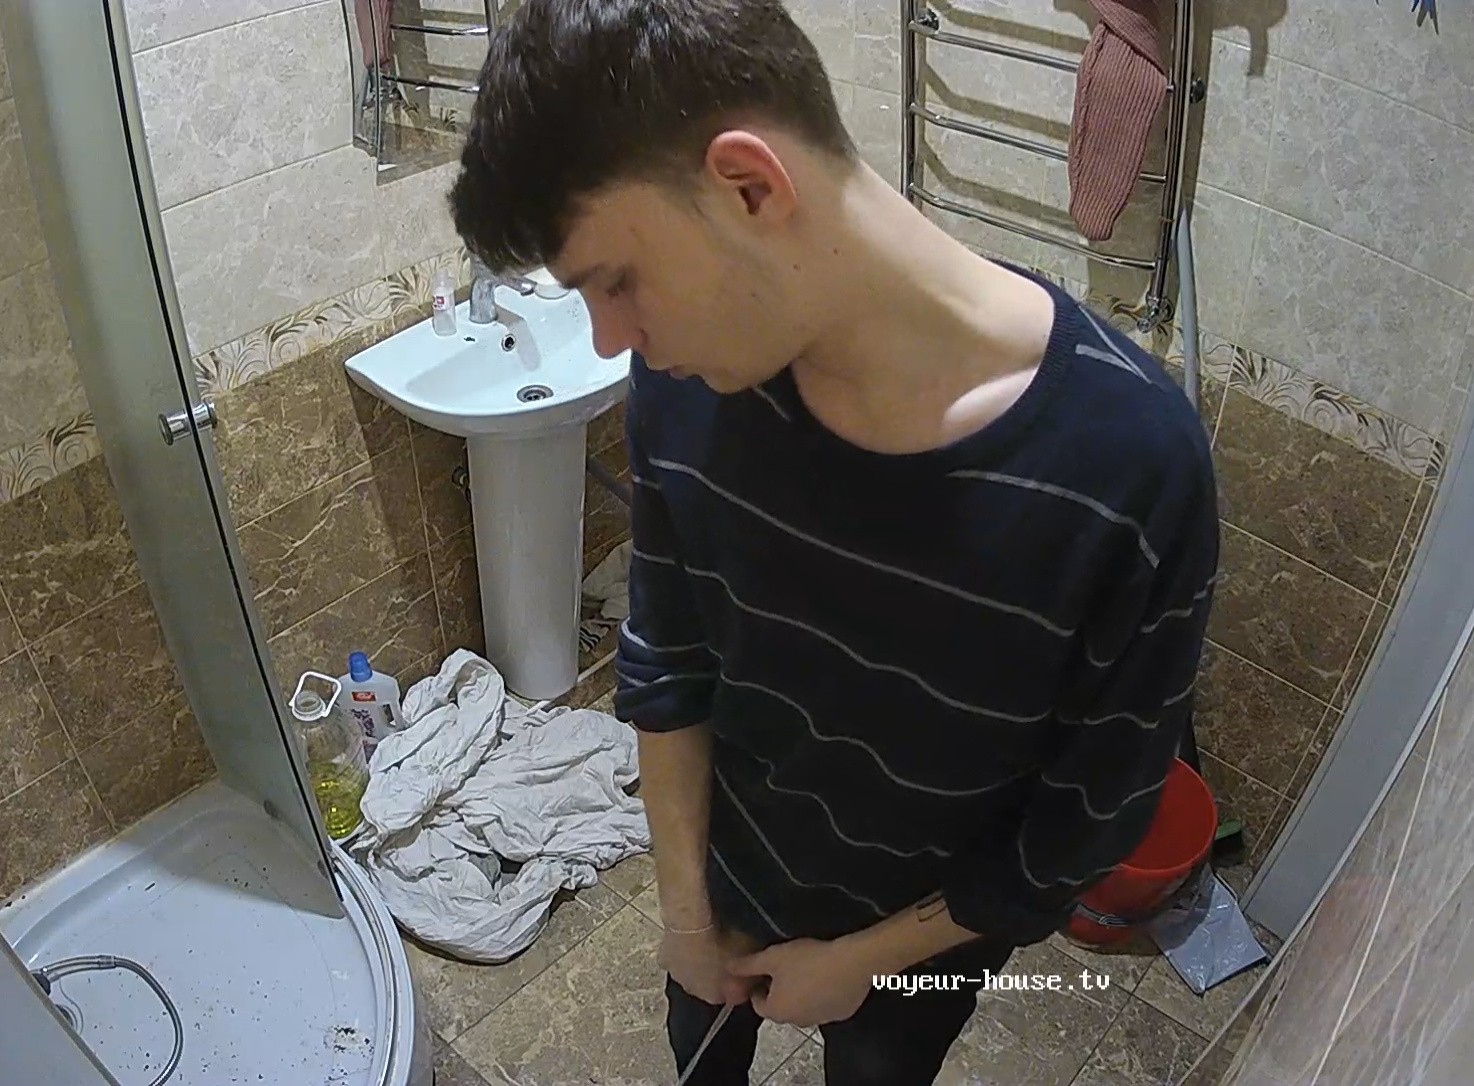 Guest guy peeing 24 Feb 2022